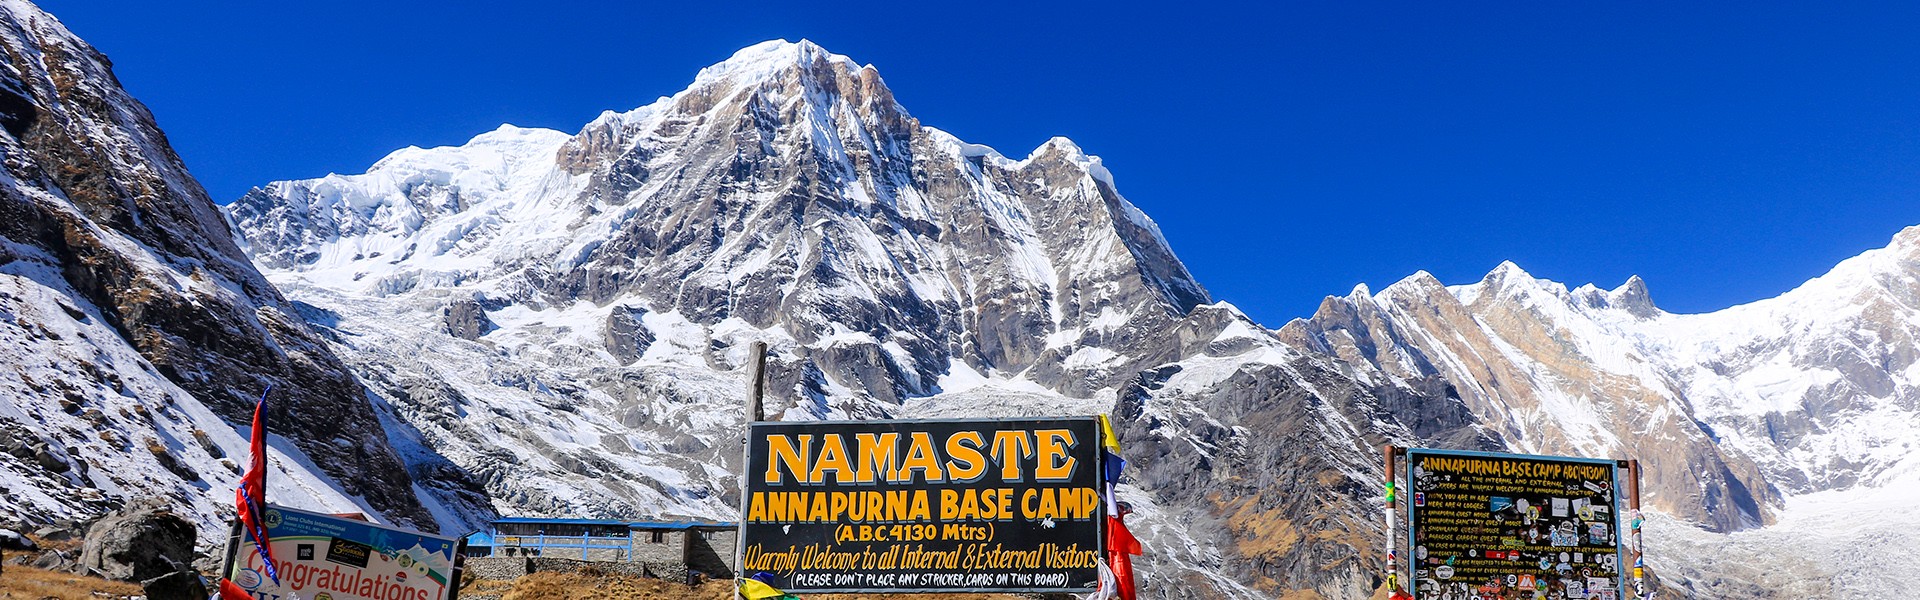 Annapurna Base Camp Trek - 16 Days